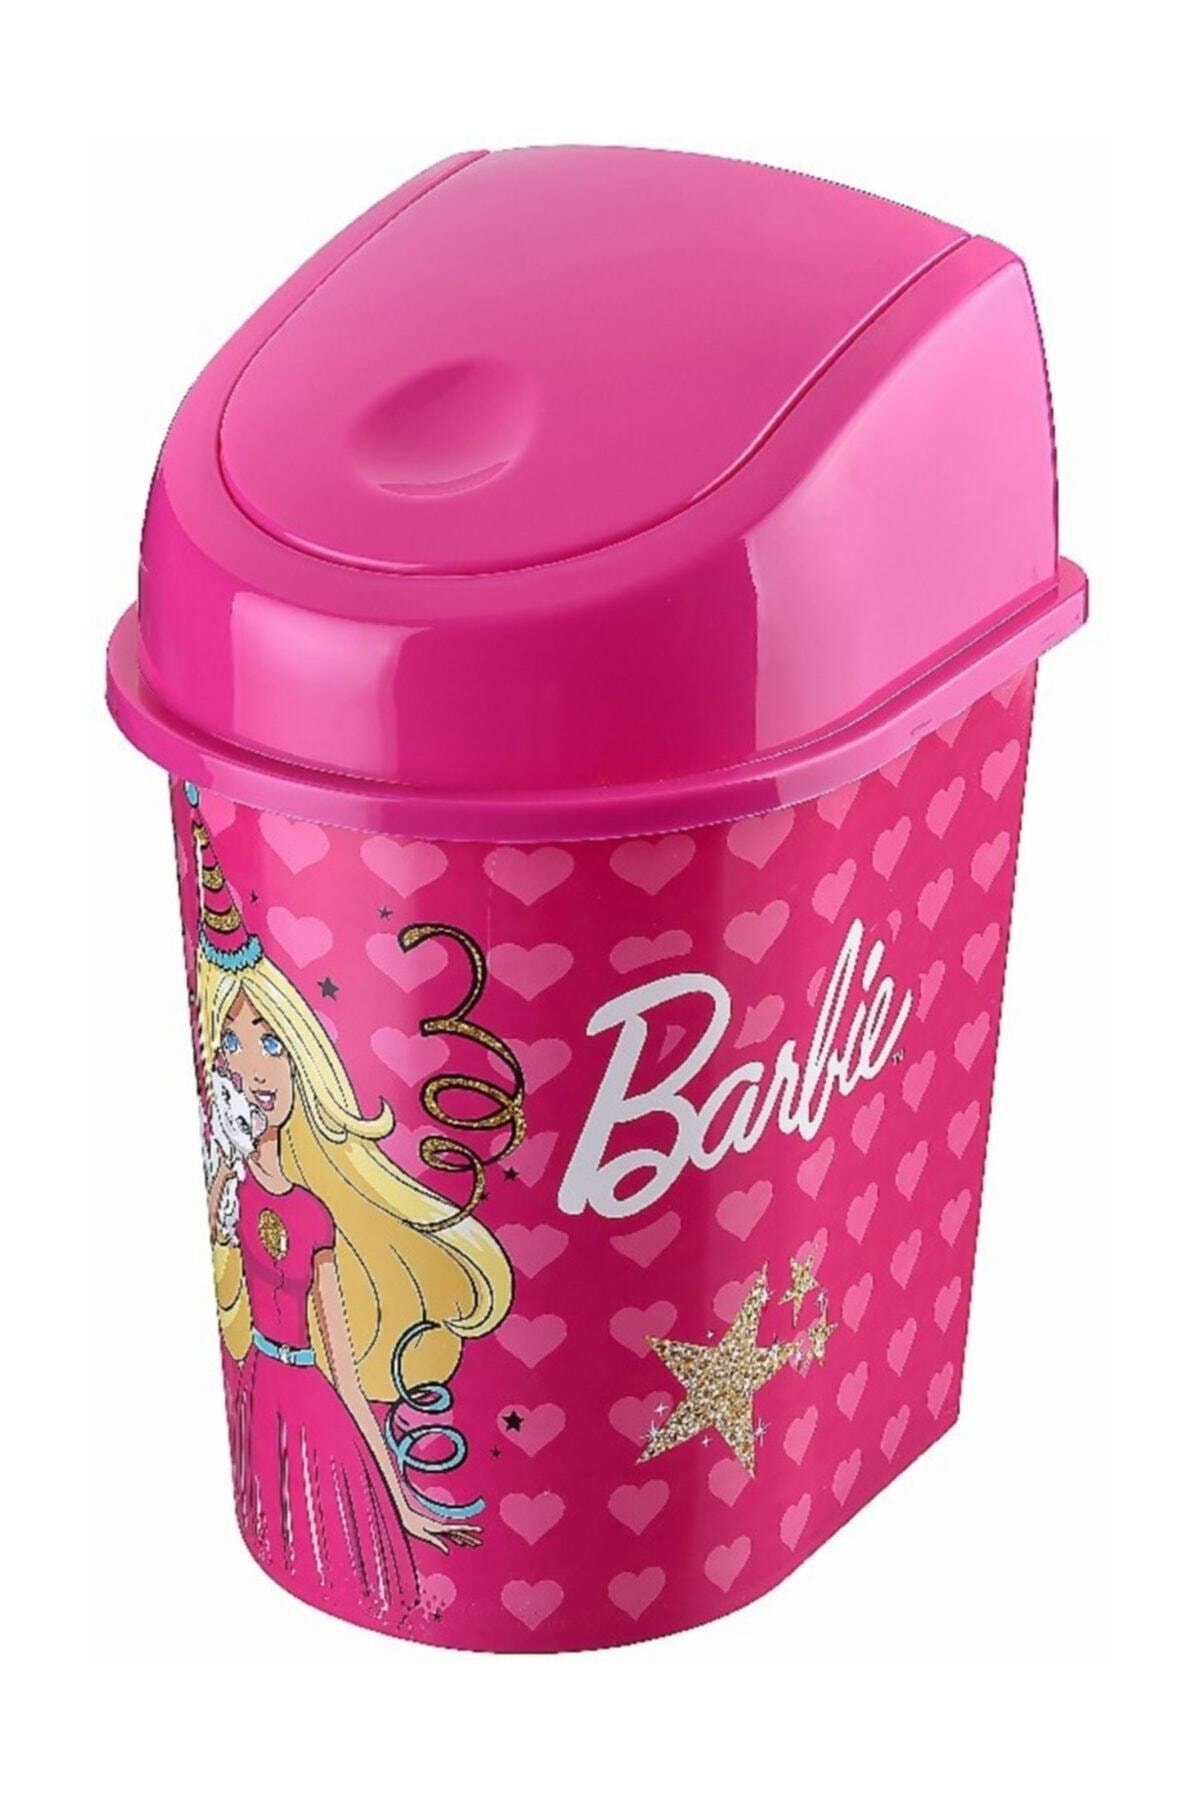 Tuffex - Barbie Lisanslı Klik Çöp Kovası 3lt.